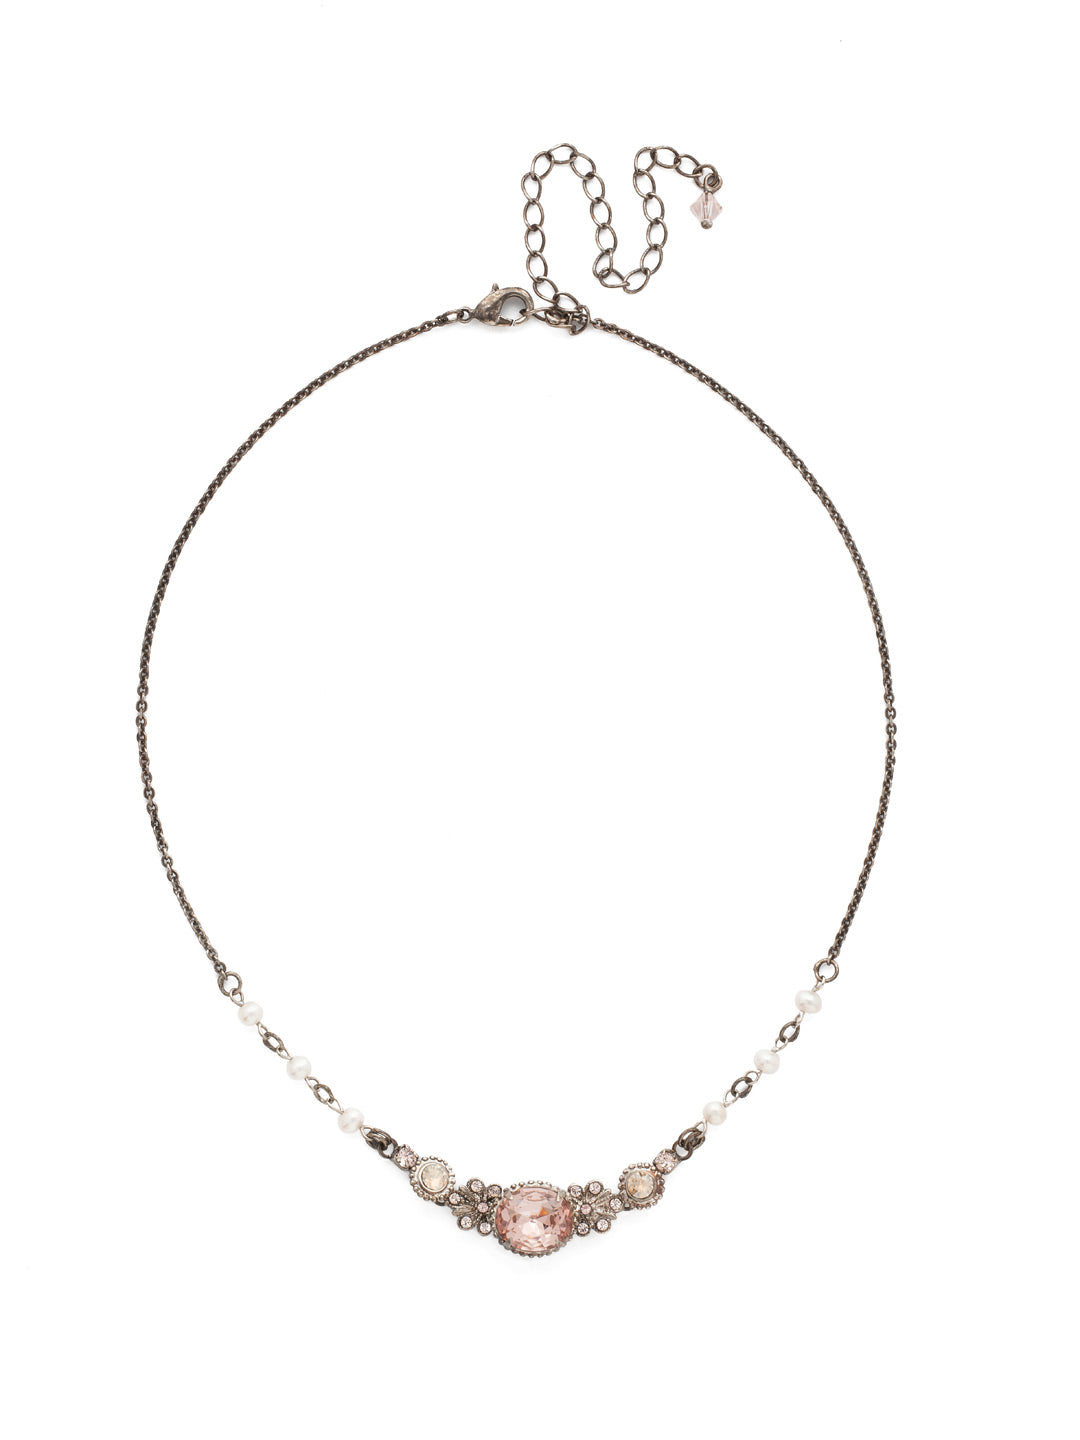 Vintage Inspired Tennis Necklace - NDP2ASSBL